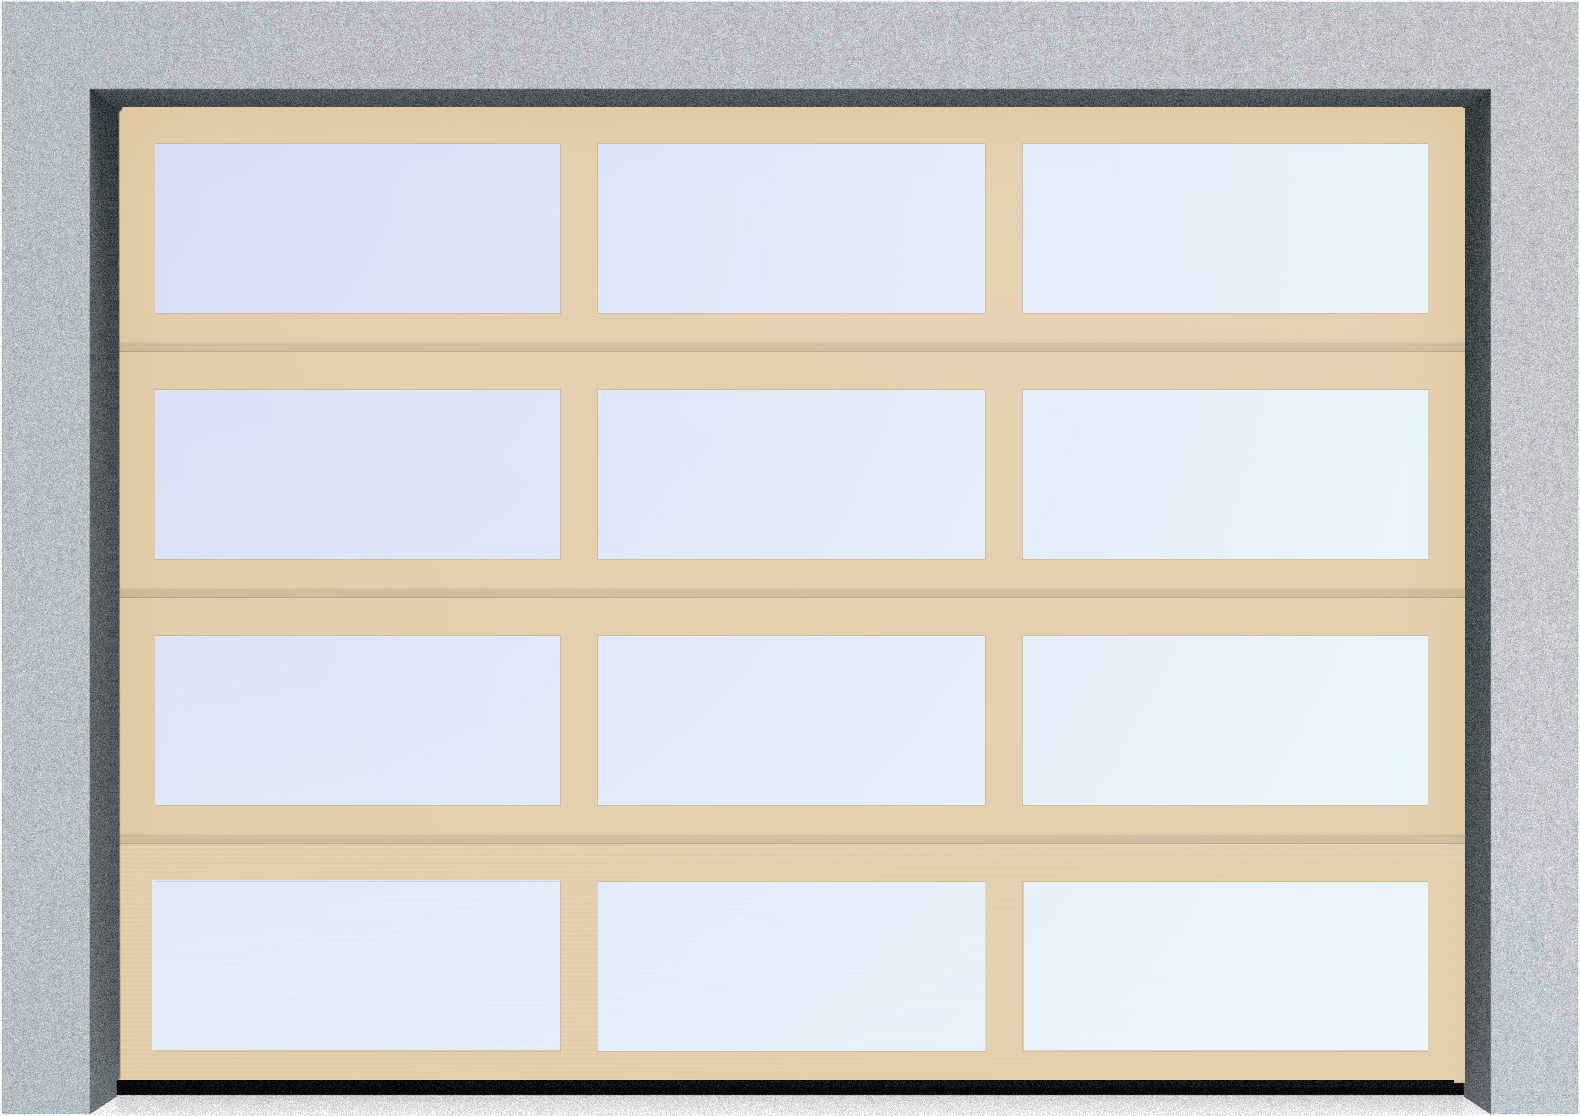  Секционные панорамные ворота серии AluTrend (АЛП) 2875х2125 нижняя панель стандартные цвета, фото 1 